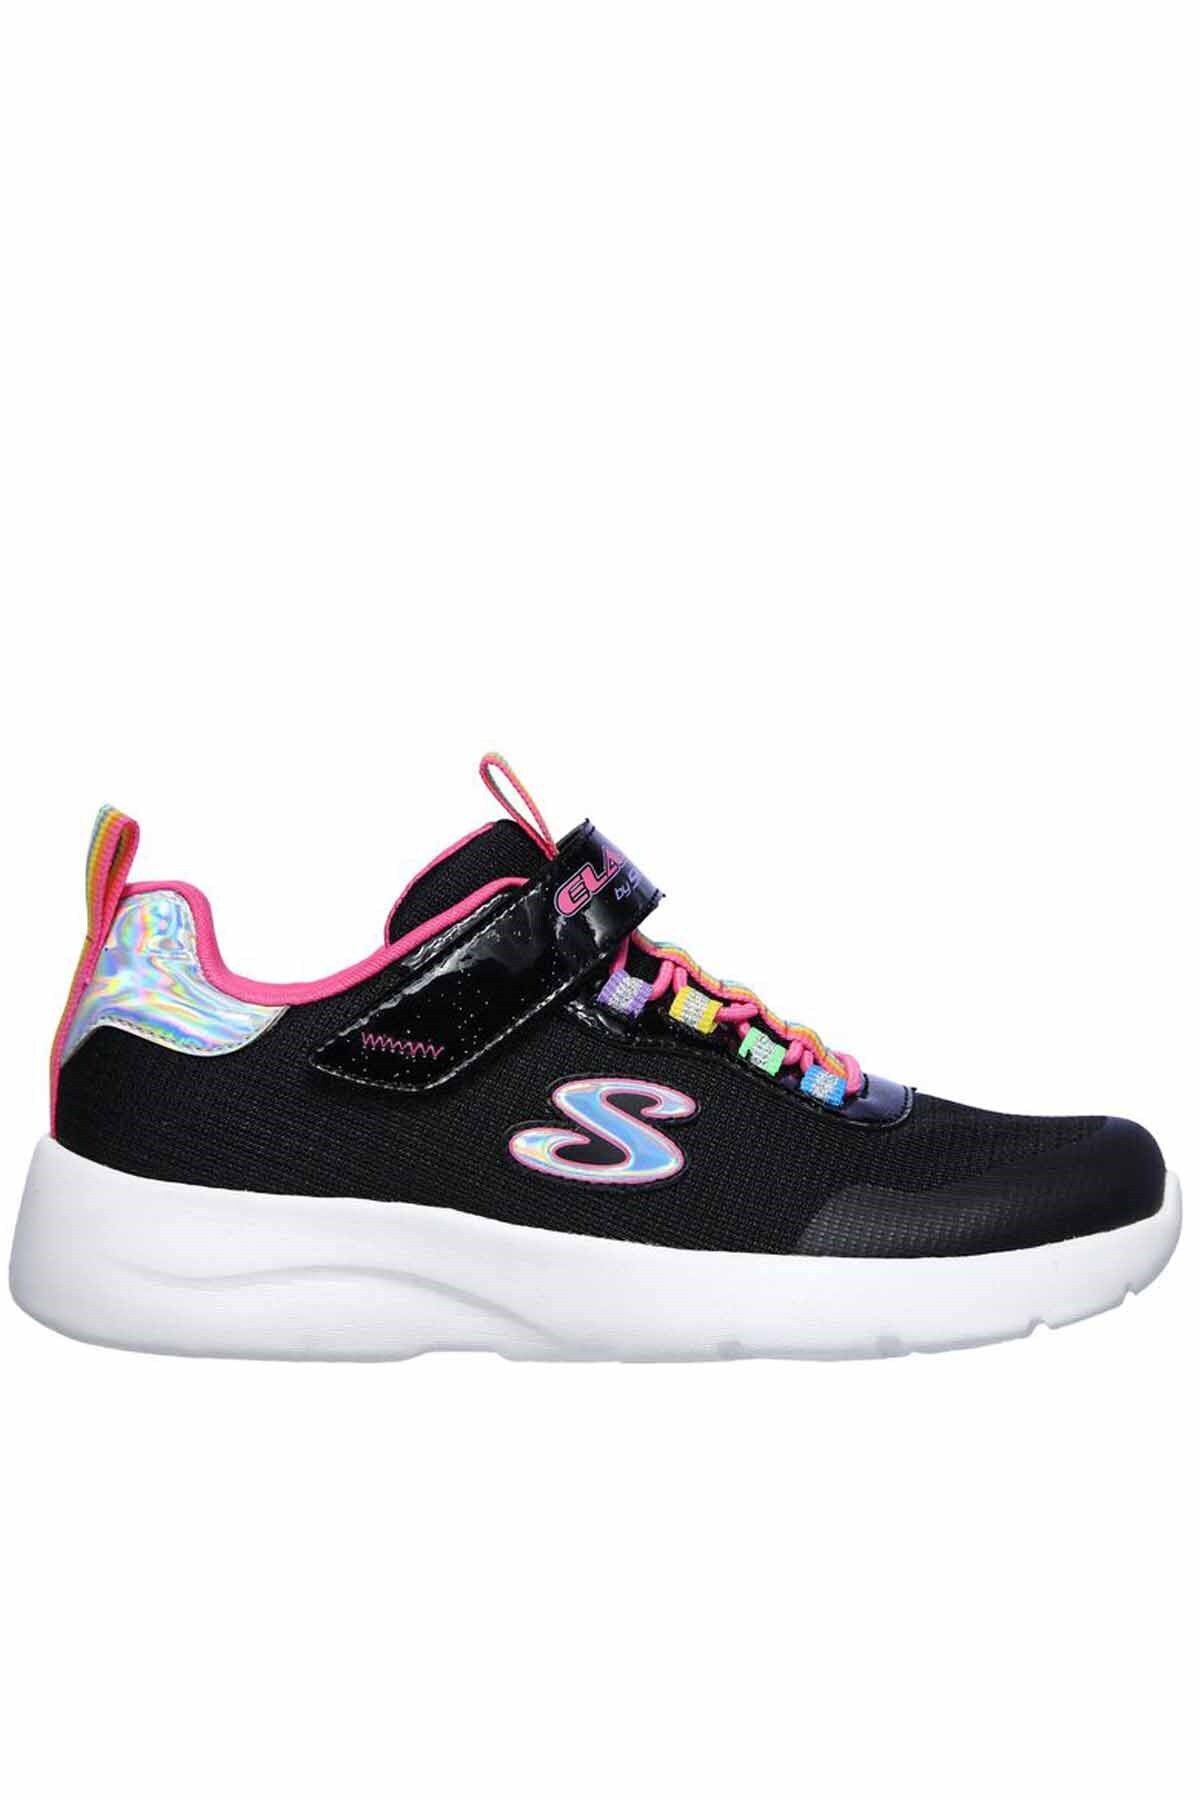 Skechers Dynamight 2.0-rockin' Rainbow Çocuk Günlük Spor Ayakkabı 302464l Bkmt Siyah